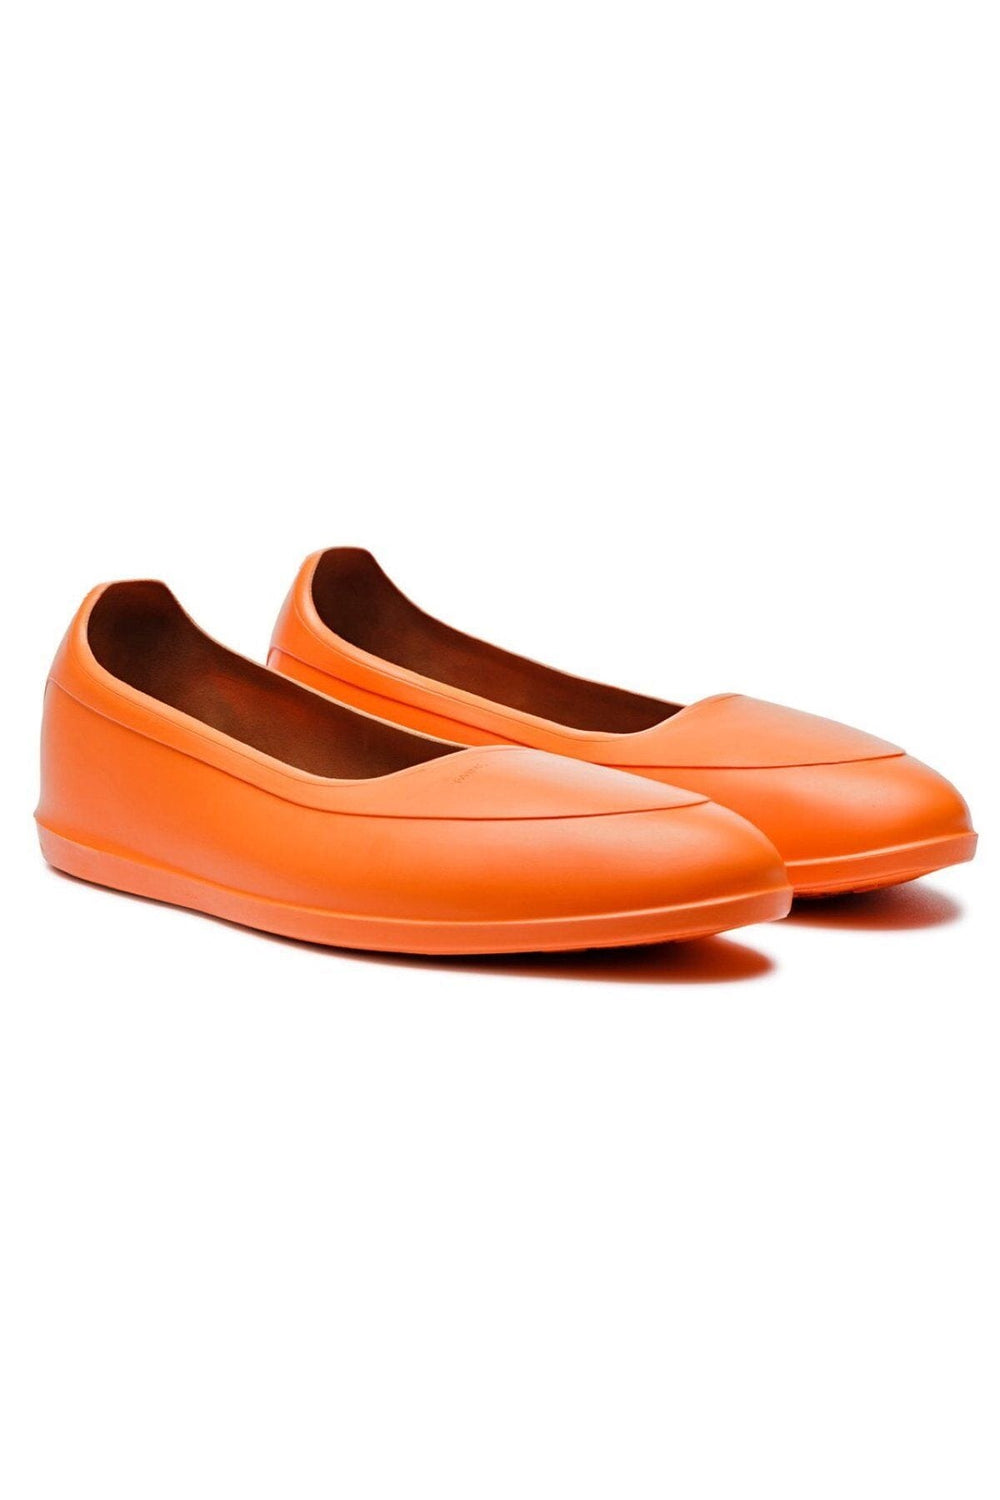 Galoche orange Homme - Chaussures - Galoches Swims